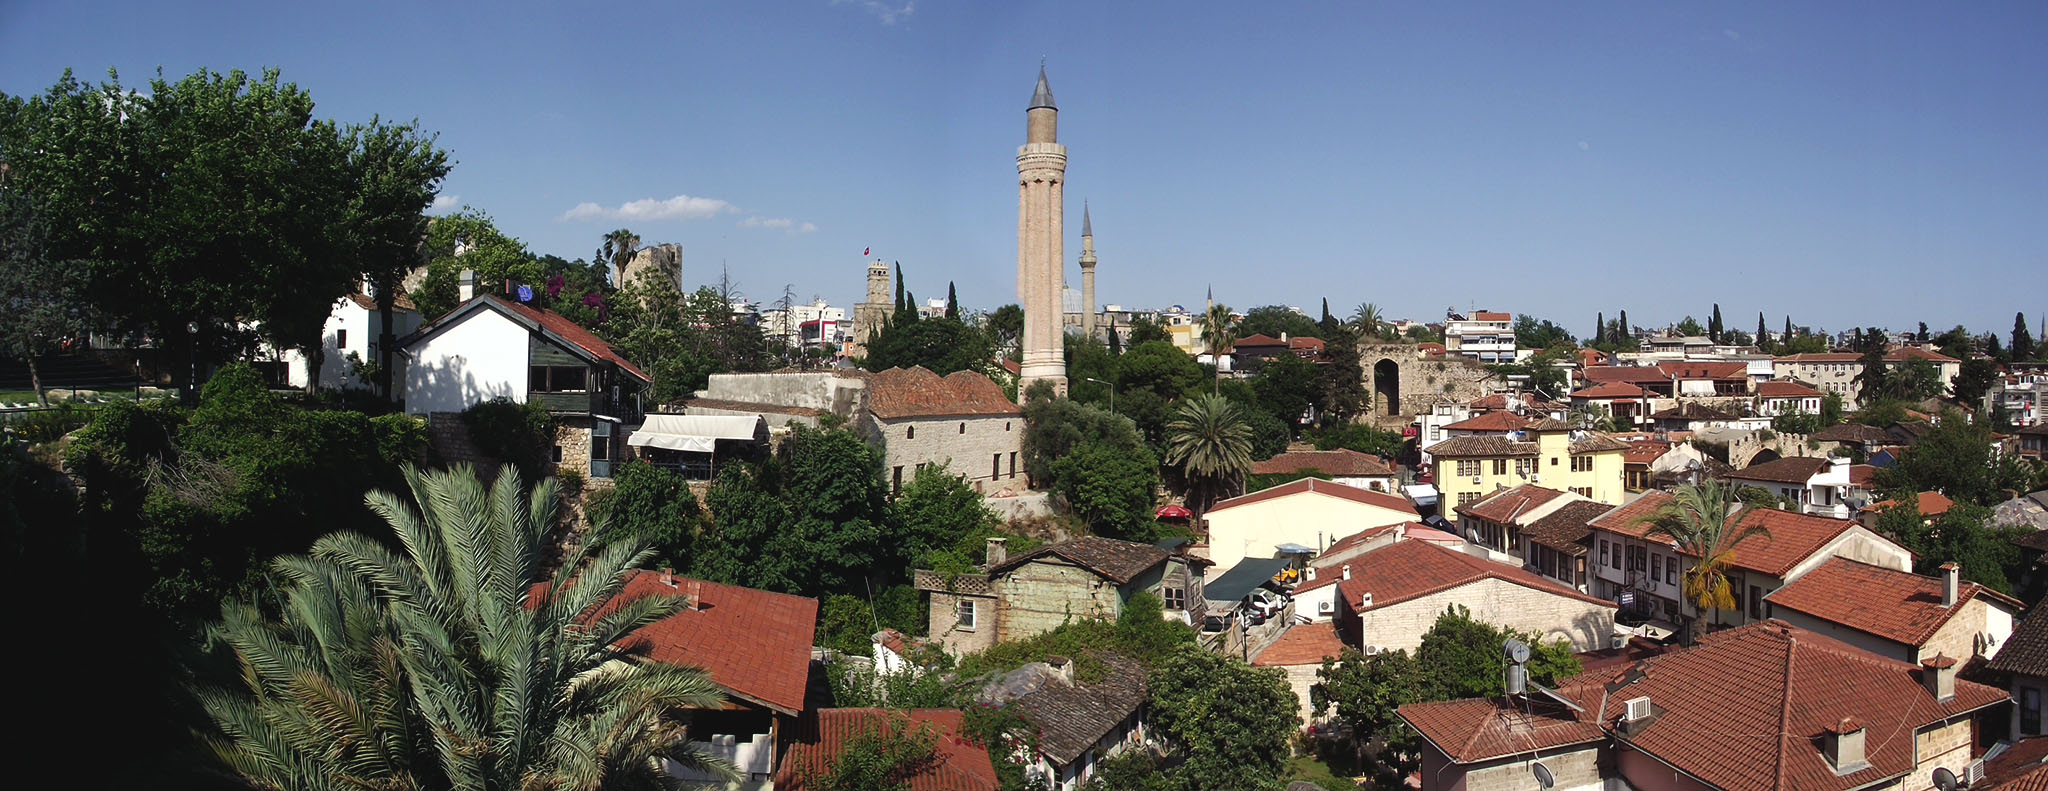 En Turquie : visite de la vieille ville d'Antalya et son minaret cannelé.